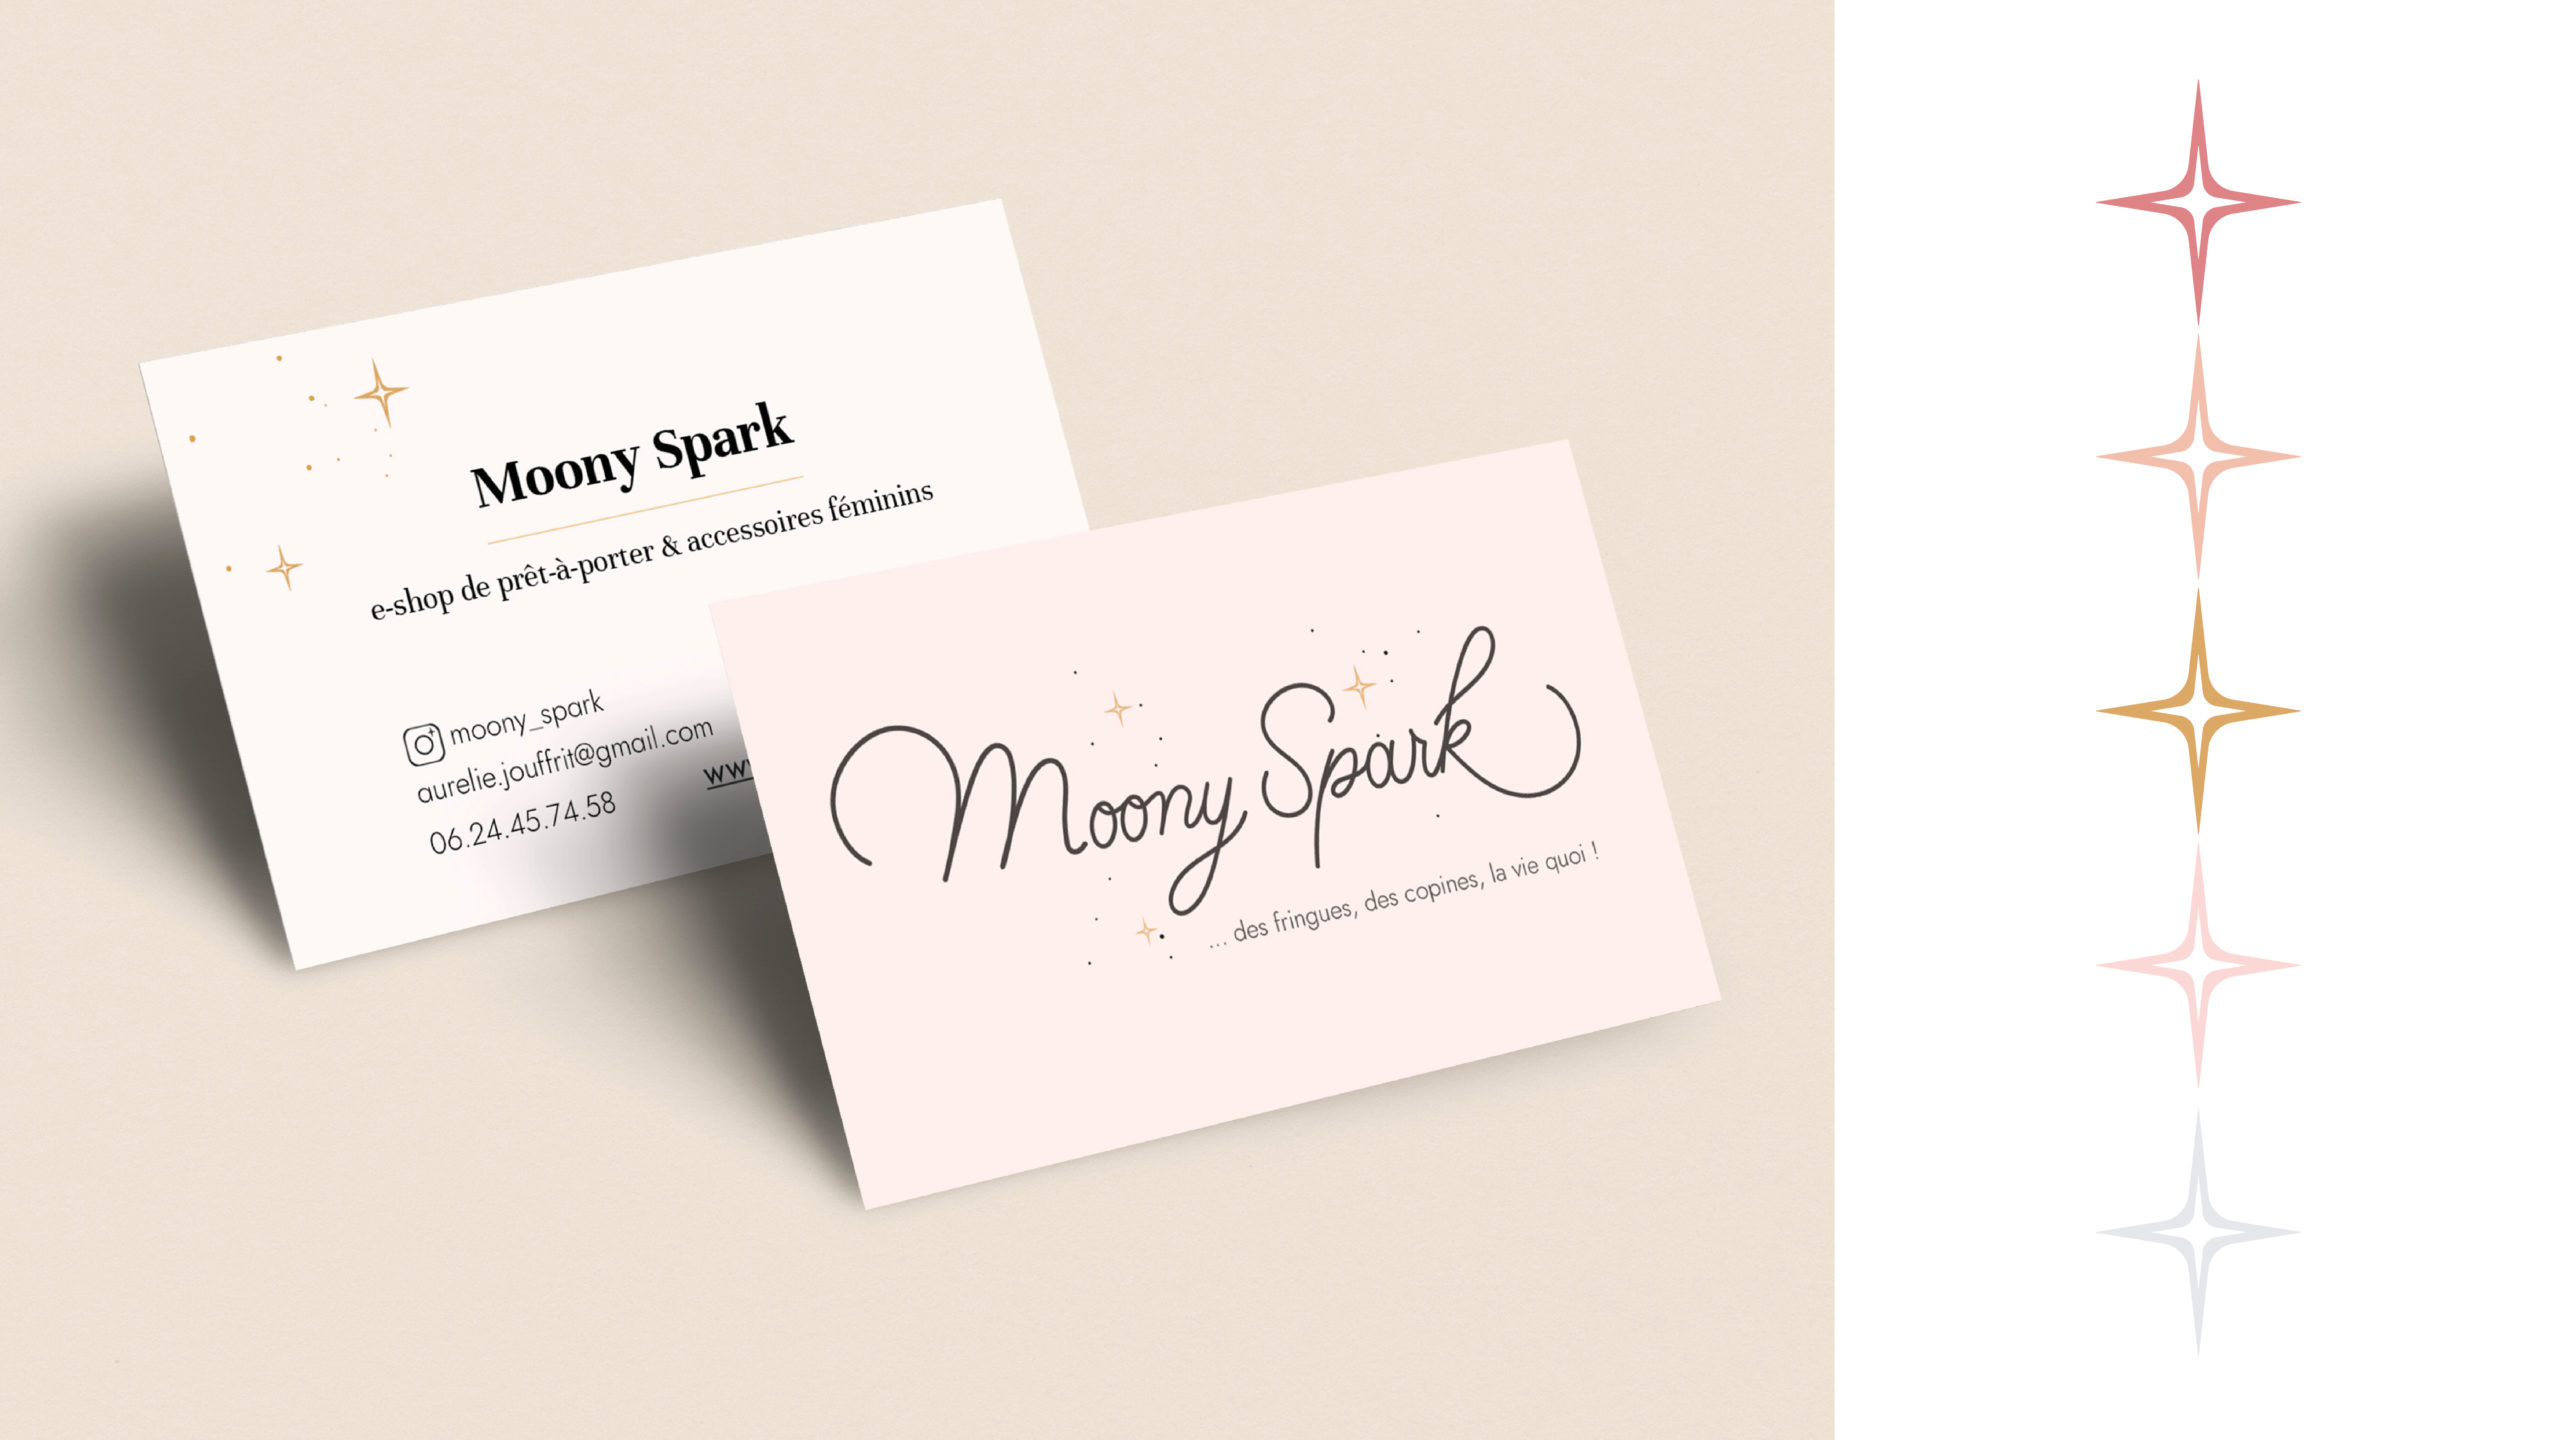 Carte de visite de la marque Moony Spark, prêt-à-porter et accessoire au féminin